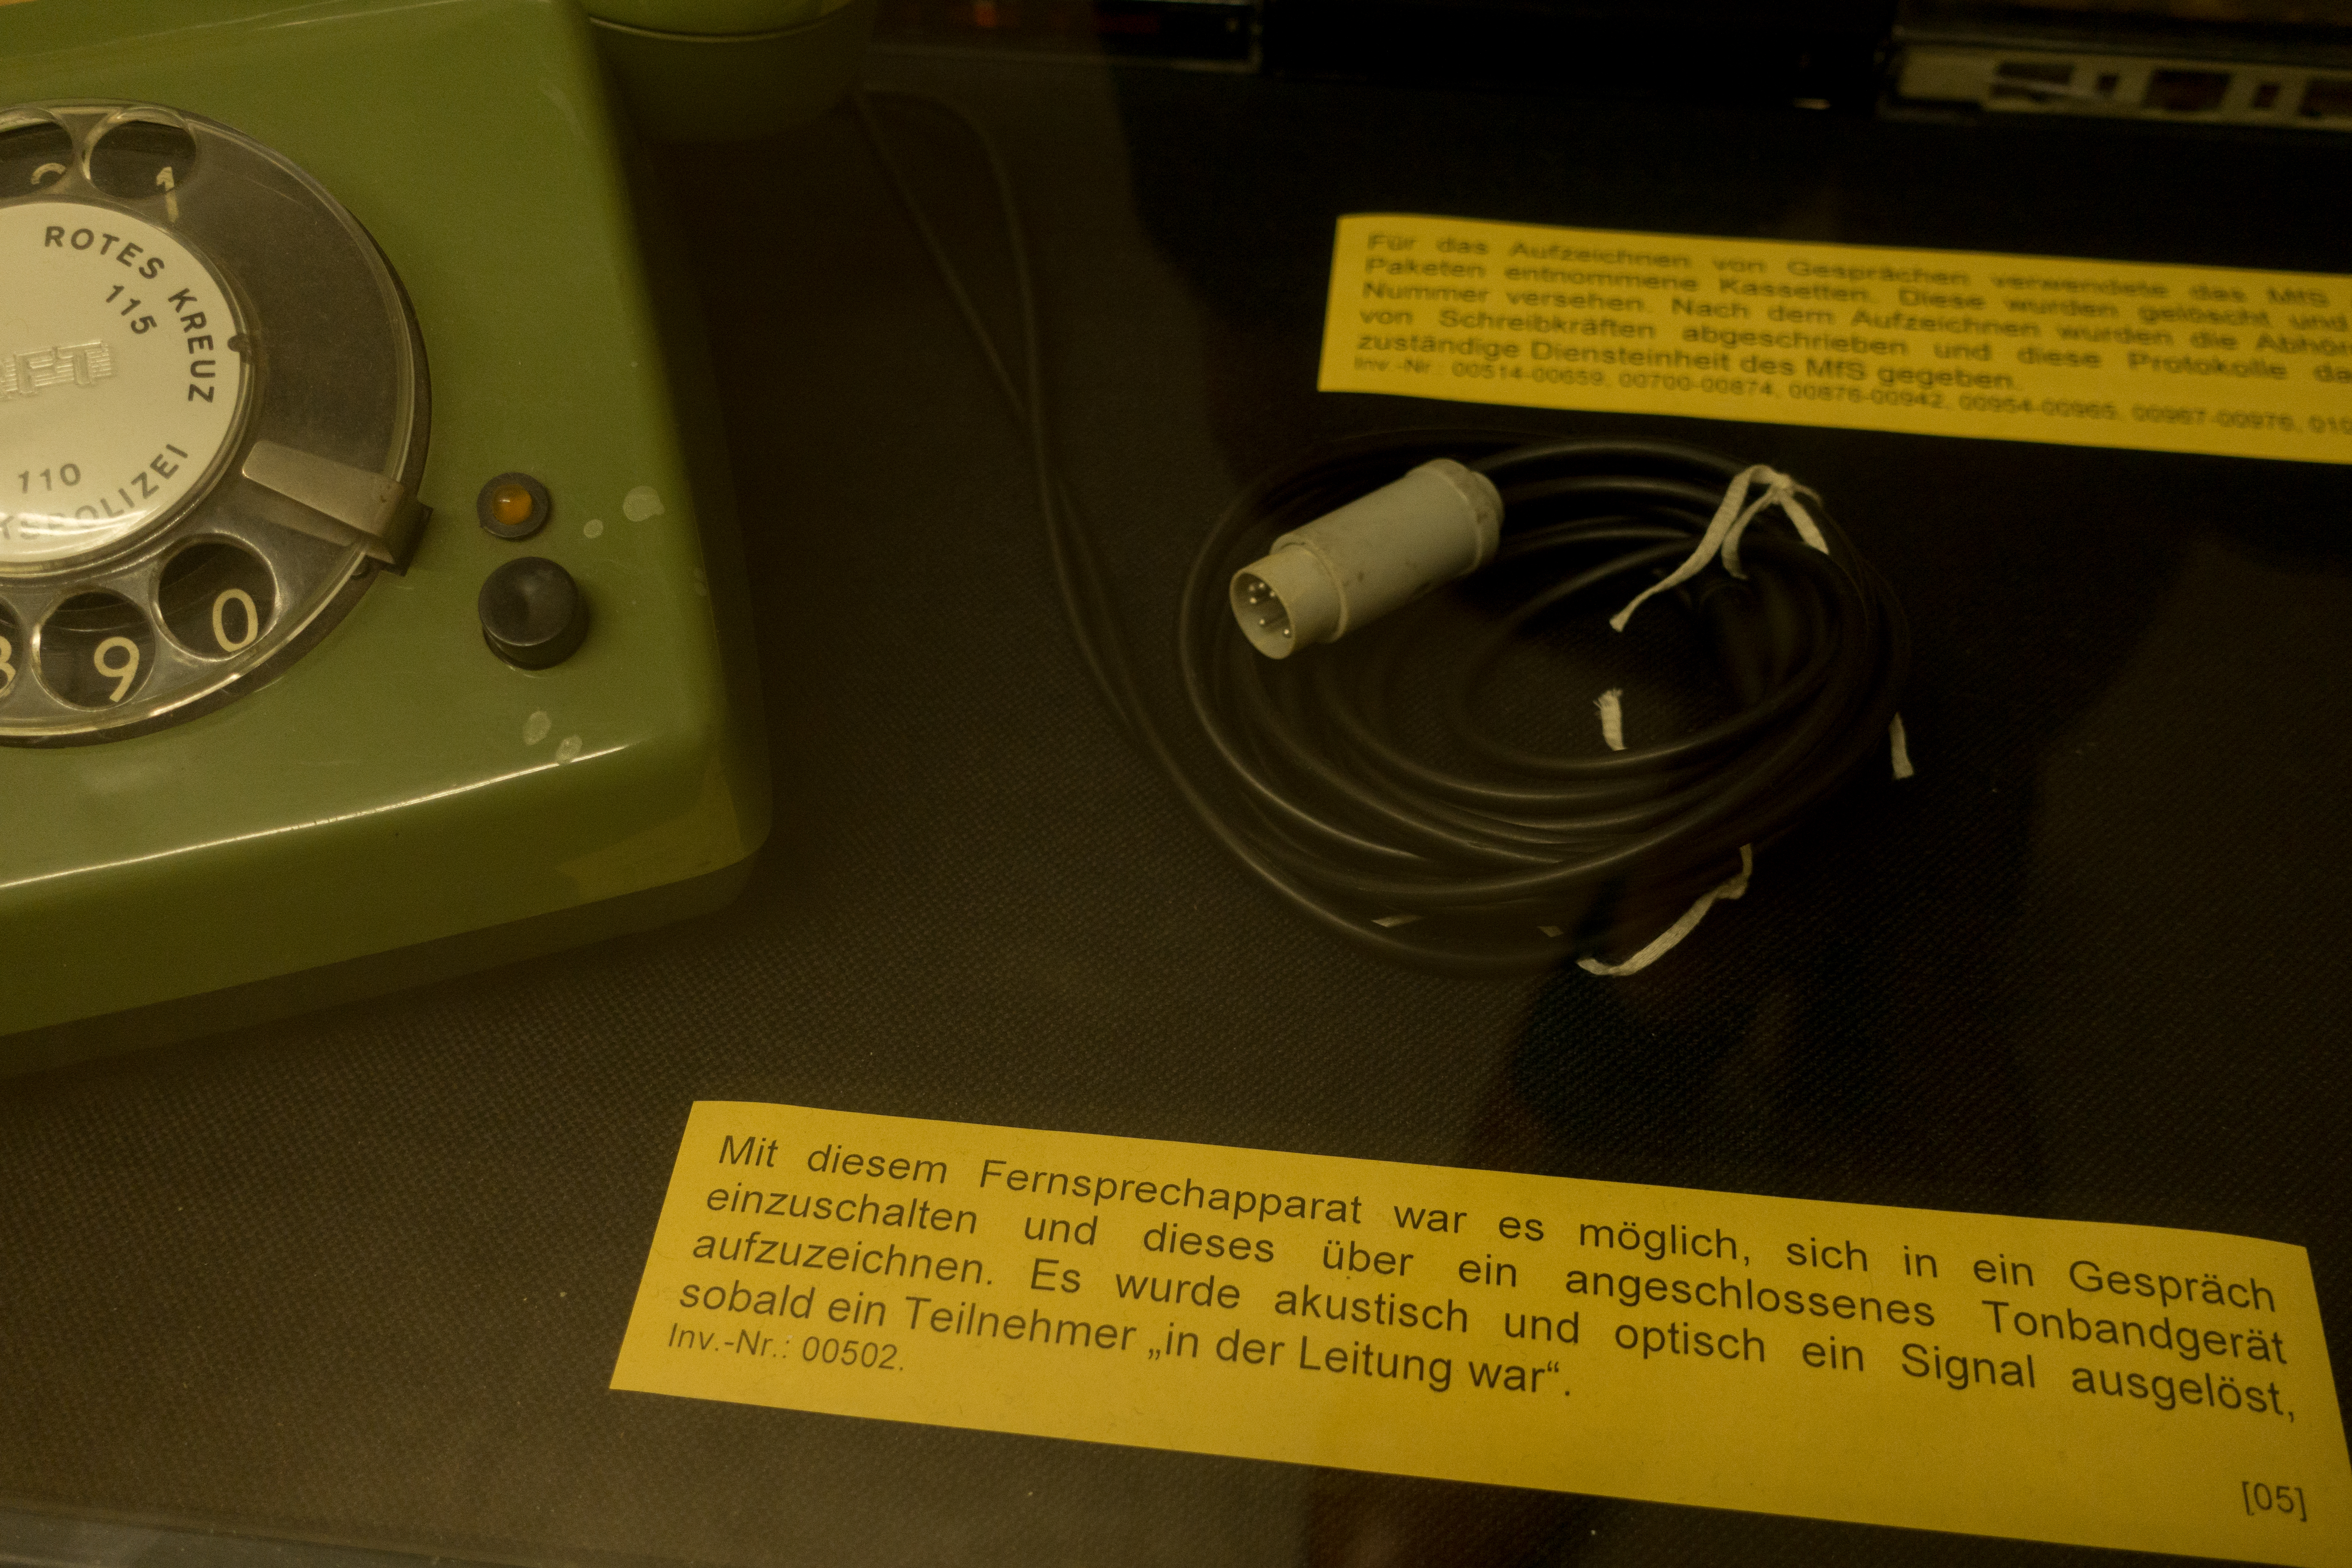 Das Bild zeigt ein historisches Überwachungsgerät. Es ist ein grünes Telefon mit Wählscheibe und einem angeschlossenen Kabel und Stecker. Daneben befindet sich ein gelbes Informationsschild mit dem Text: "Mit diesem Fernsprechapparat war es möglich, sich in ein Gespräch einzuschalten und dieses über ein angeschlossenes Tonbandgerät aufzuzeichnen. Es wurde akustisch und optisch ein Signal ausgelöst, sobald ein Teilnehmer 'in der Leitung war'." Es scheint, dass dies ein Gerät ist, das für Abhörzwecke verwendet wurde, wobei die genaue historische Epoche oder der Kontext des Gerätes nicht angegeben ist. Inv.-Nr.: 00502. Bei Klick vergrößert sich das Bild.